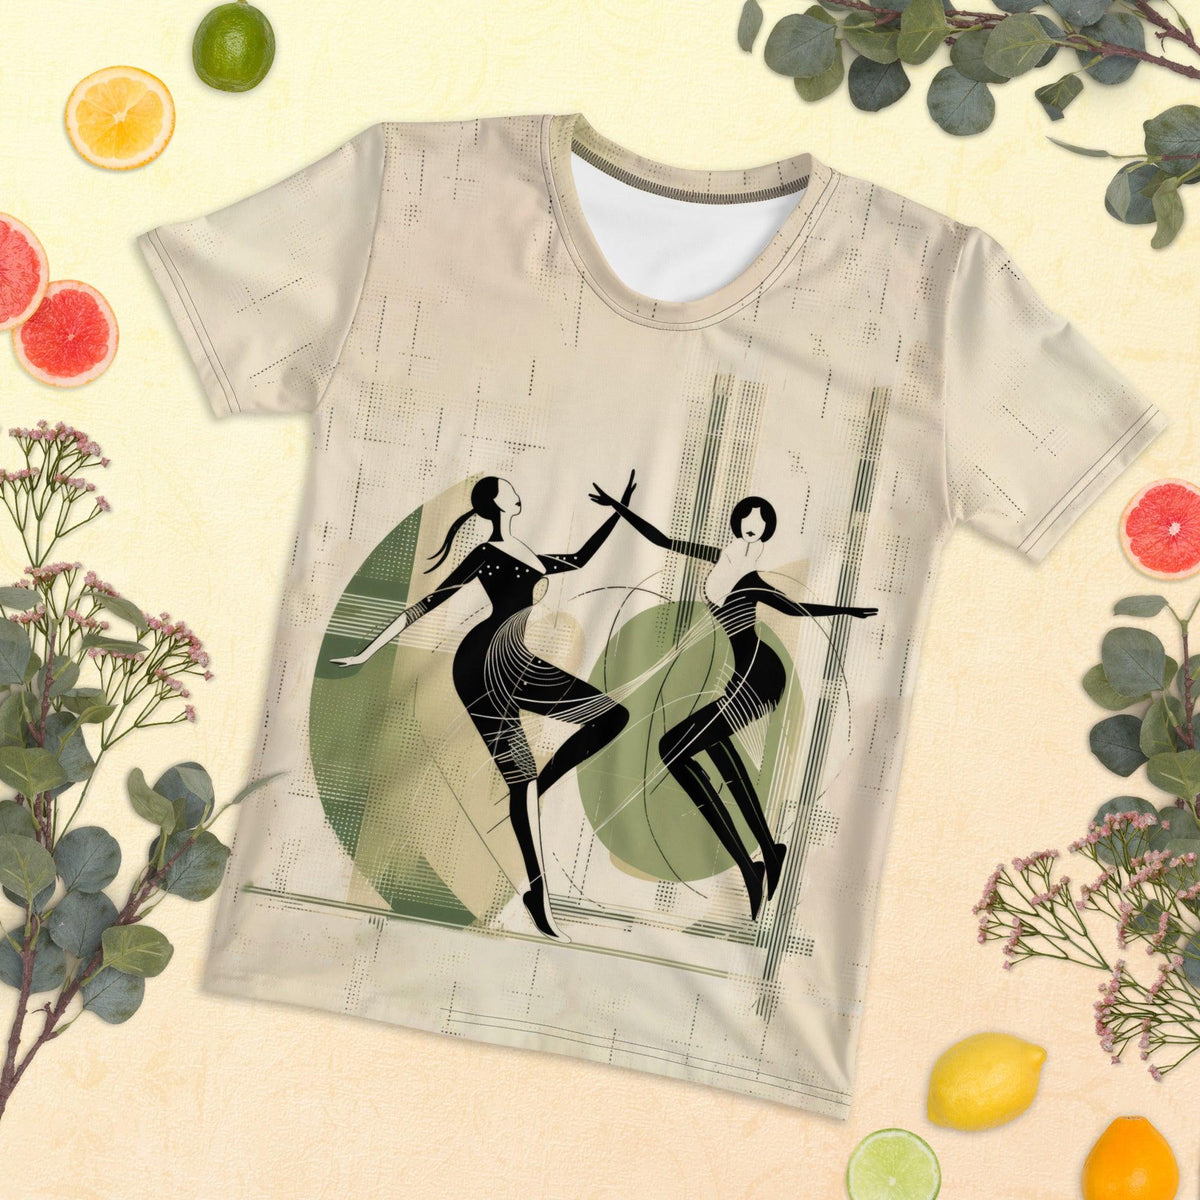 Graceful Women's Dance Attire Women's T-shirt - Beyond T-shirts